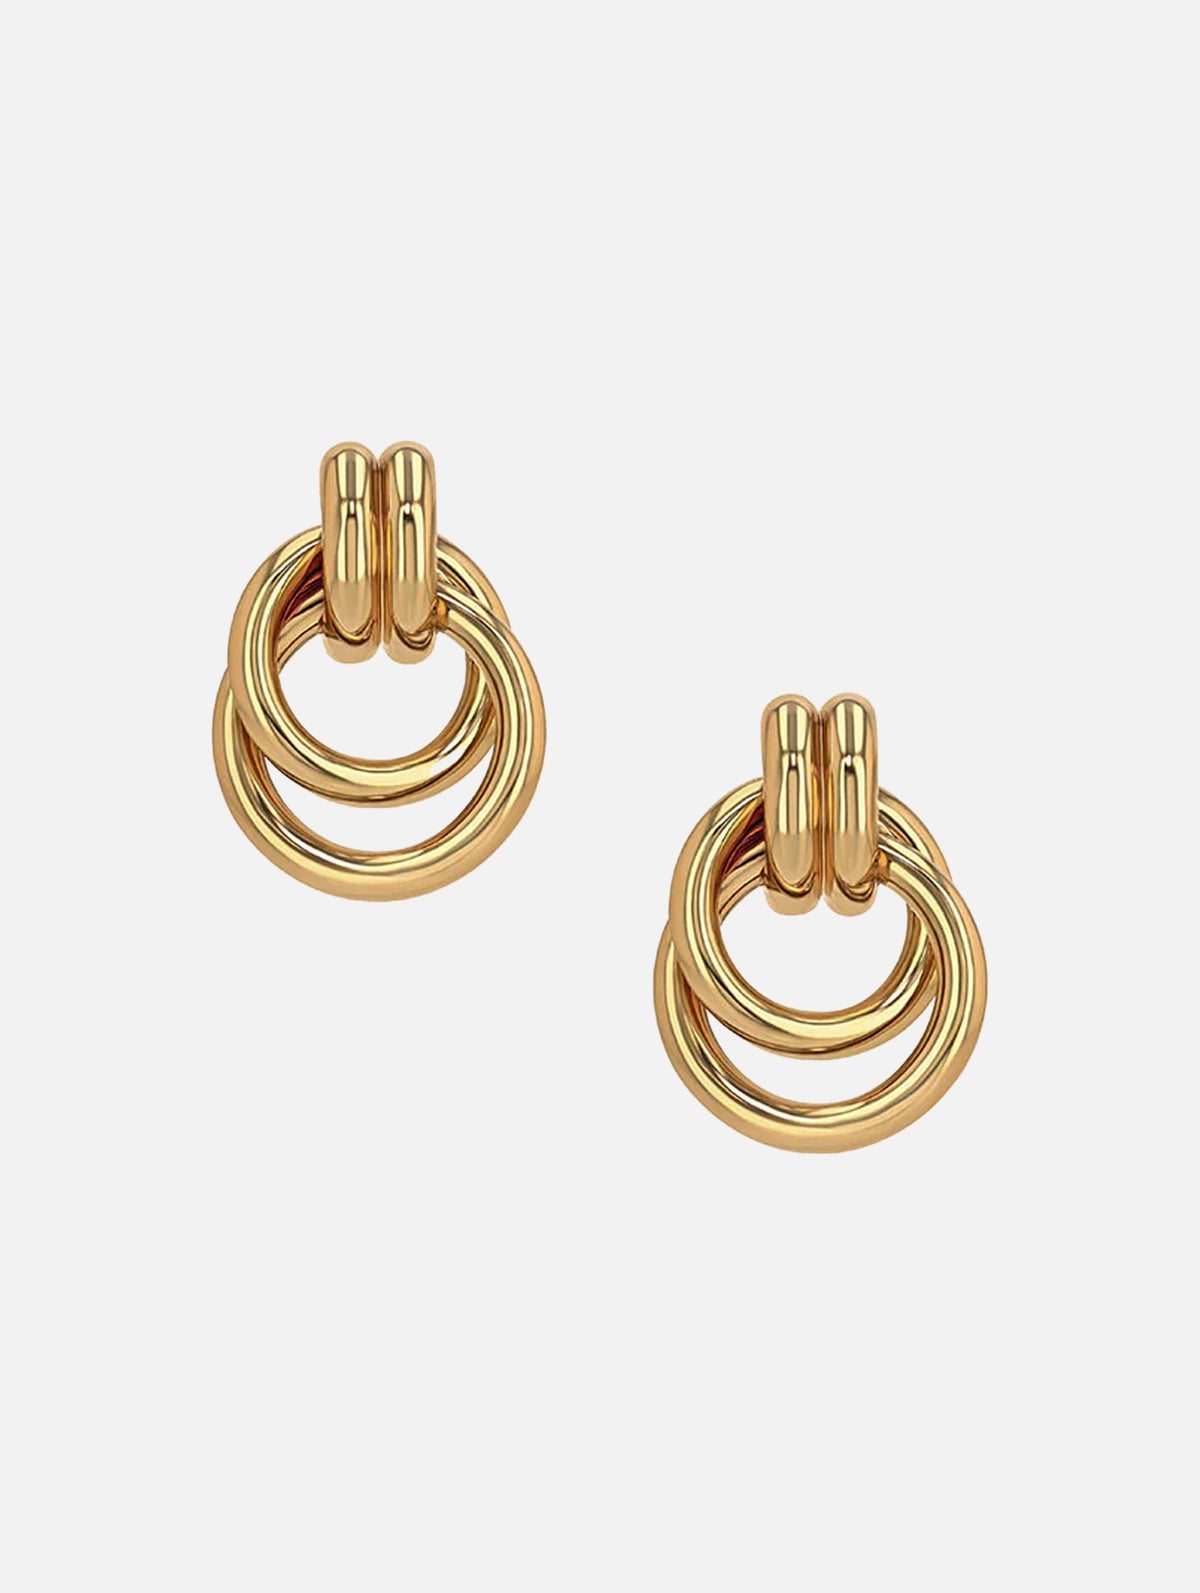 Double Knot Earrings in Gold